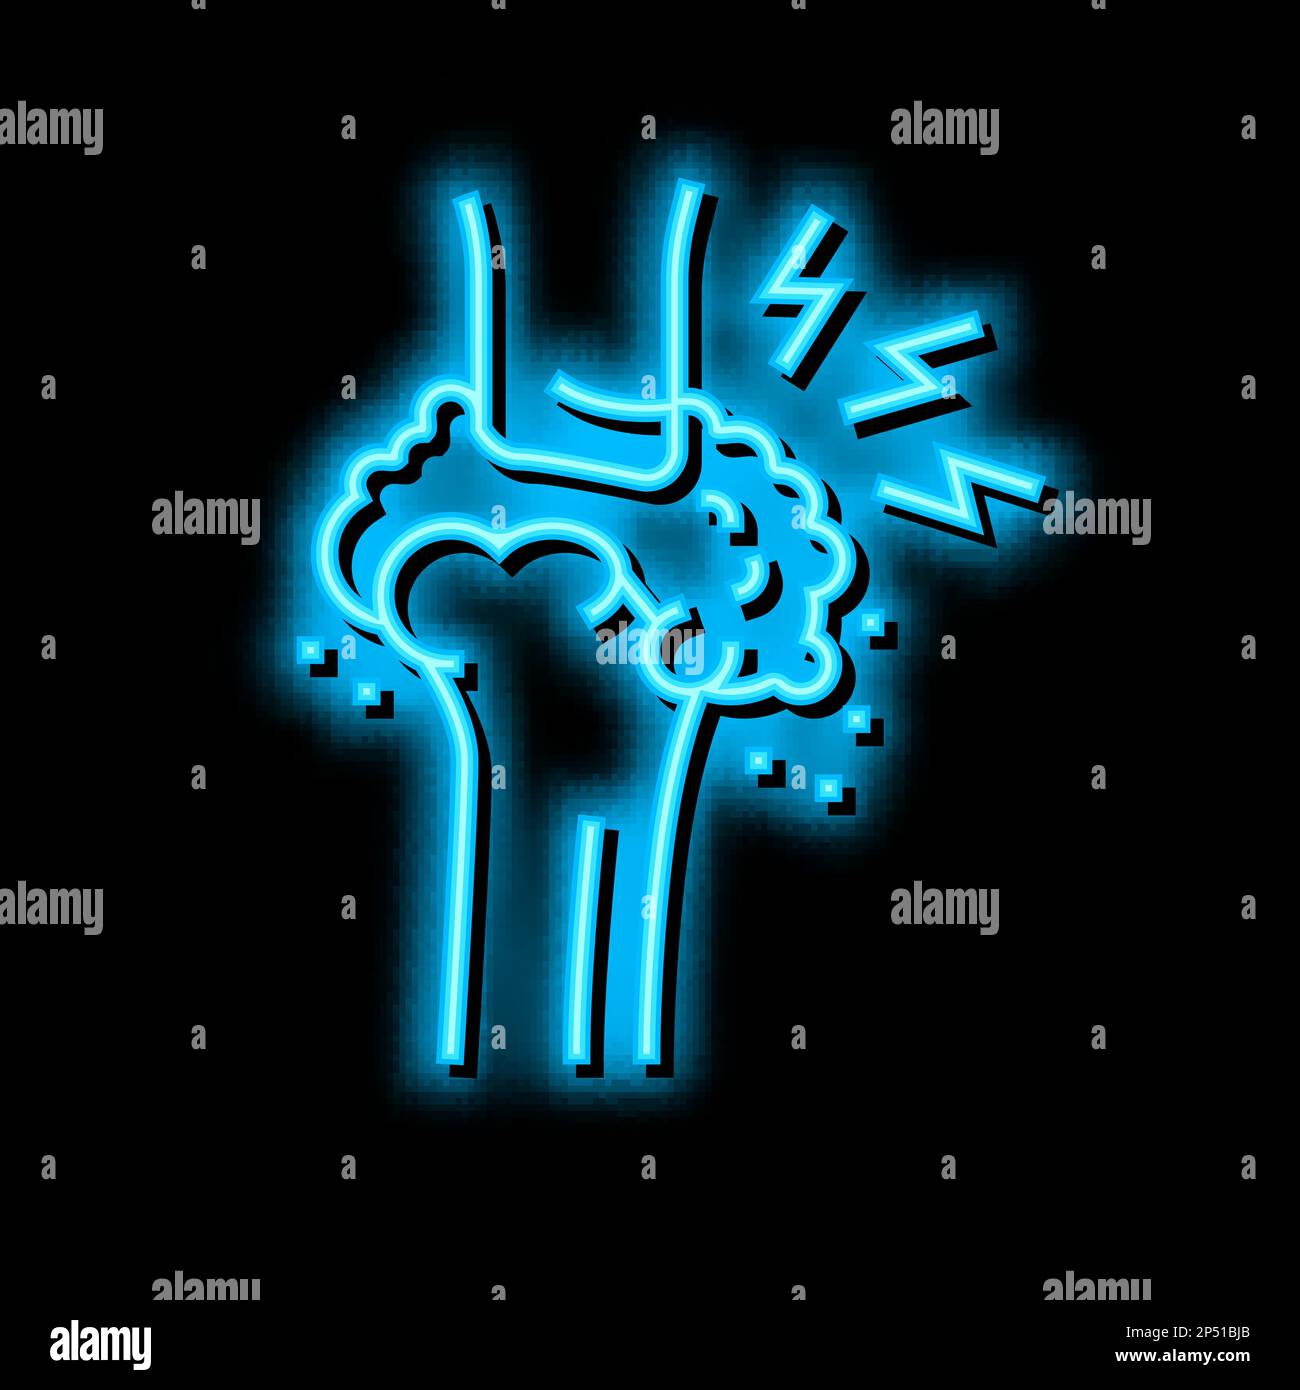 Gicht Gesundheitsproblem Neon Glow Symbol Illustration Stock Vektor